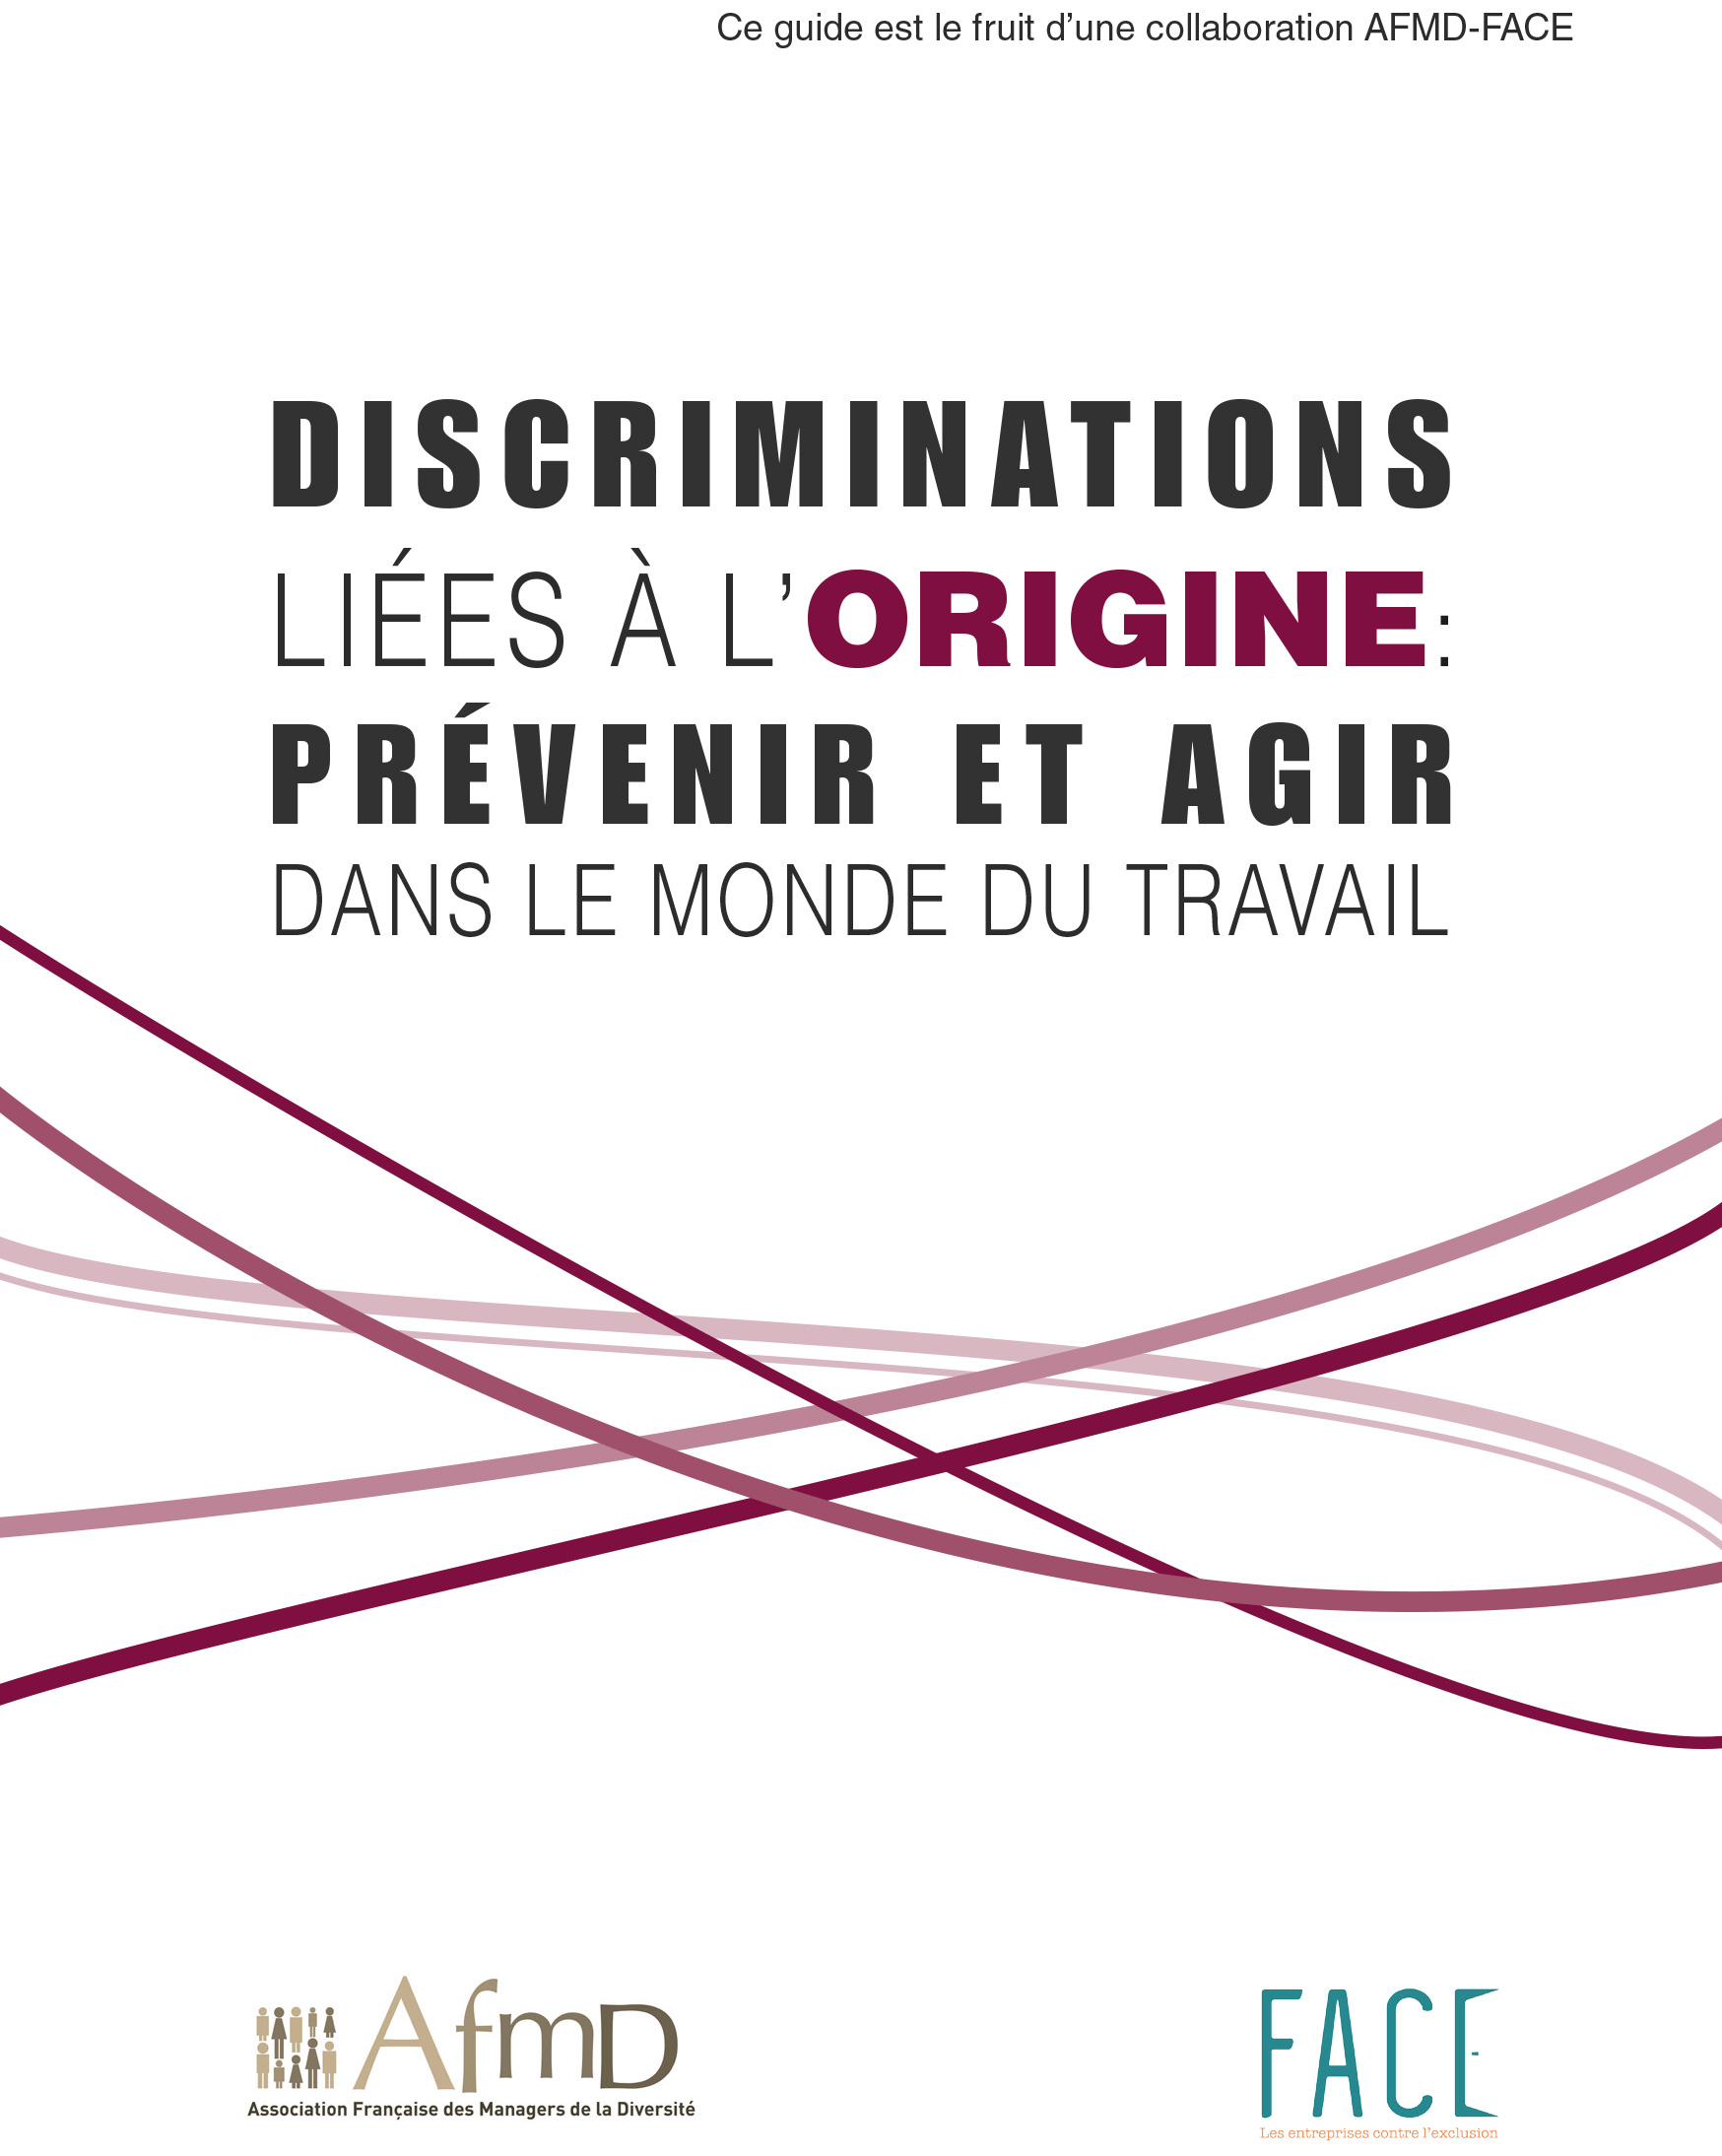 Livret de bonnes pratiques pour lutter contre les discriminations liees a l'origine dans le monde du travail